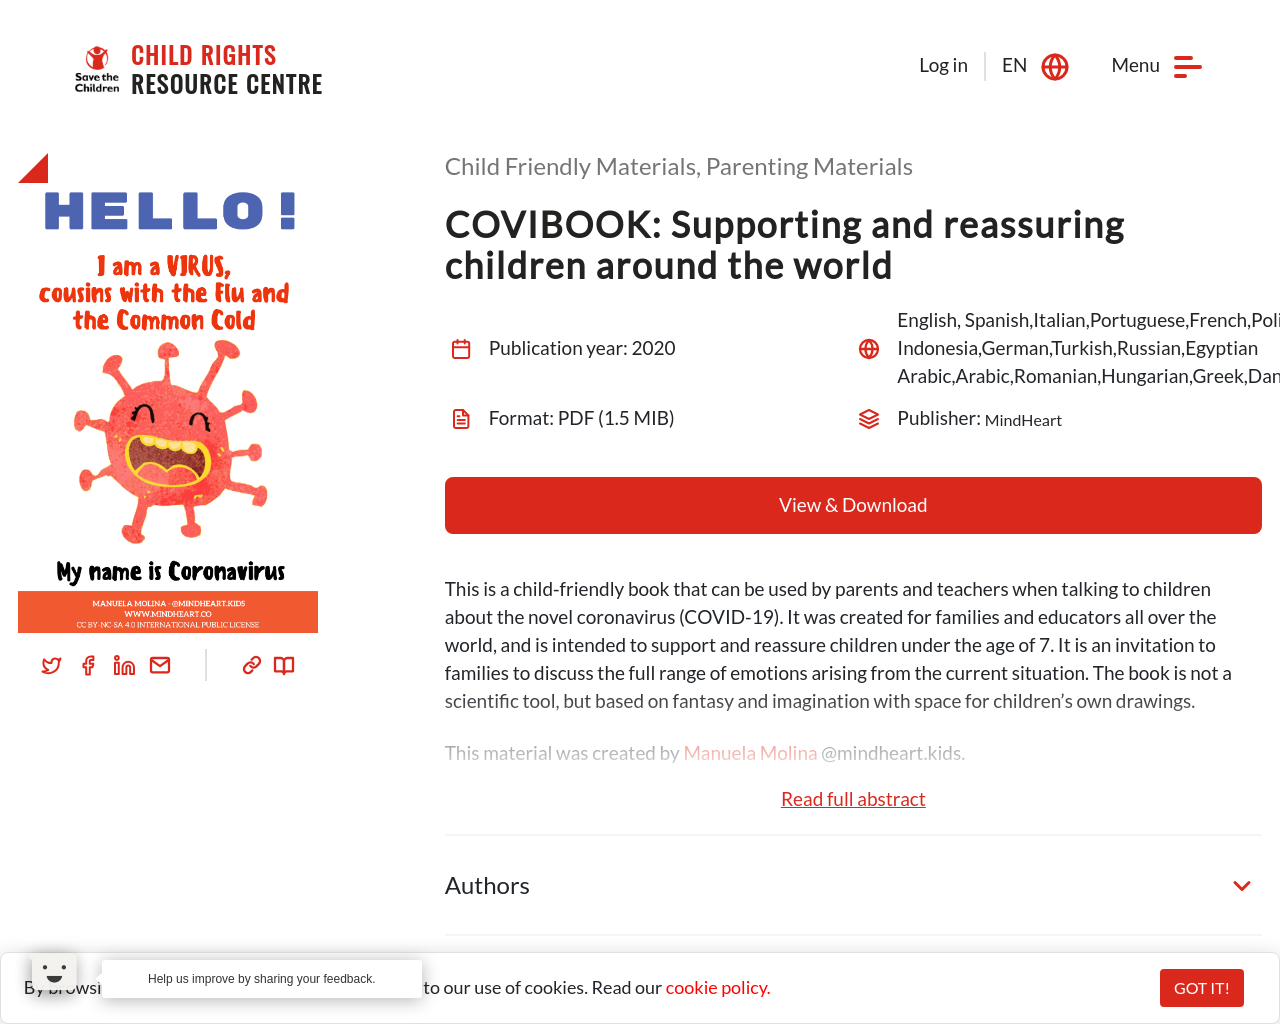 Save the Children COVIBOOK